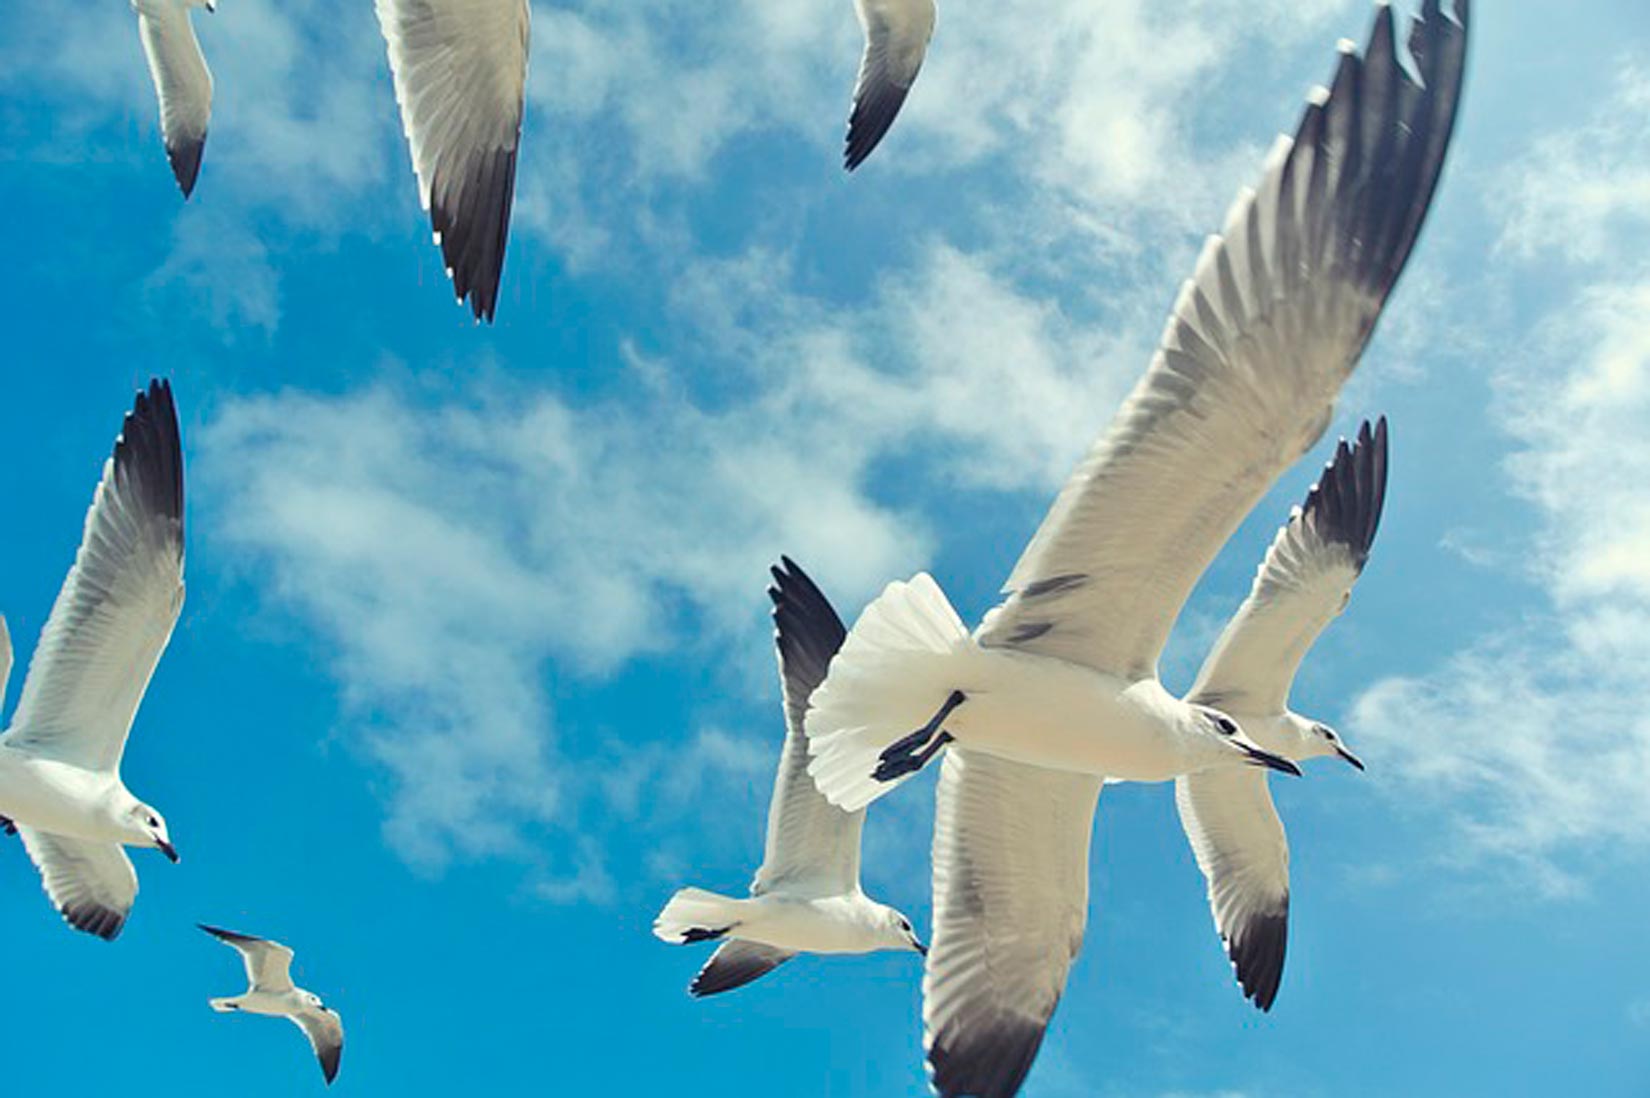 Slika prikazuje brojno jato ptica koje sinkronizirano lete u istom pravcu.Ptice su bijele boje s crno obojenim dijelovima krila. Iznad njih se vidi plavo nebo.